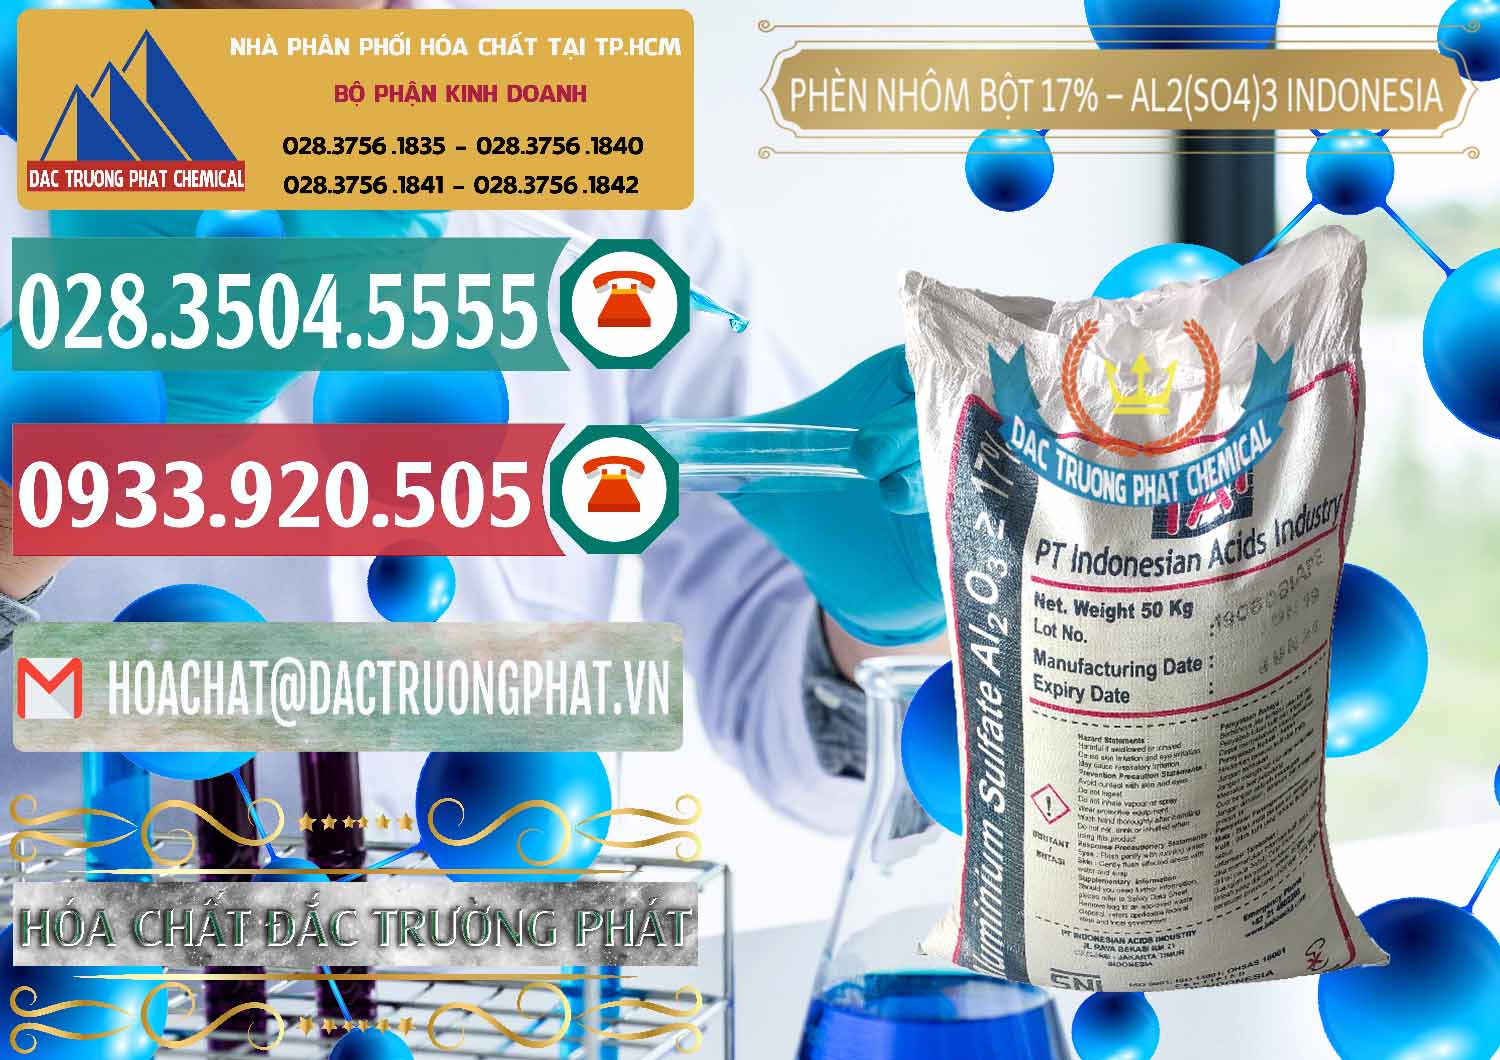 Cty chuyên nhập khẩu và bán Phèn Nhôm Bột - Al2(SO4)3 17% bao 50kg Indonesia - 0112 - Chuyên phân phối _ nhập khẩu hóa chất tại TP.HCM - muabanhoachat.vn